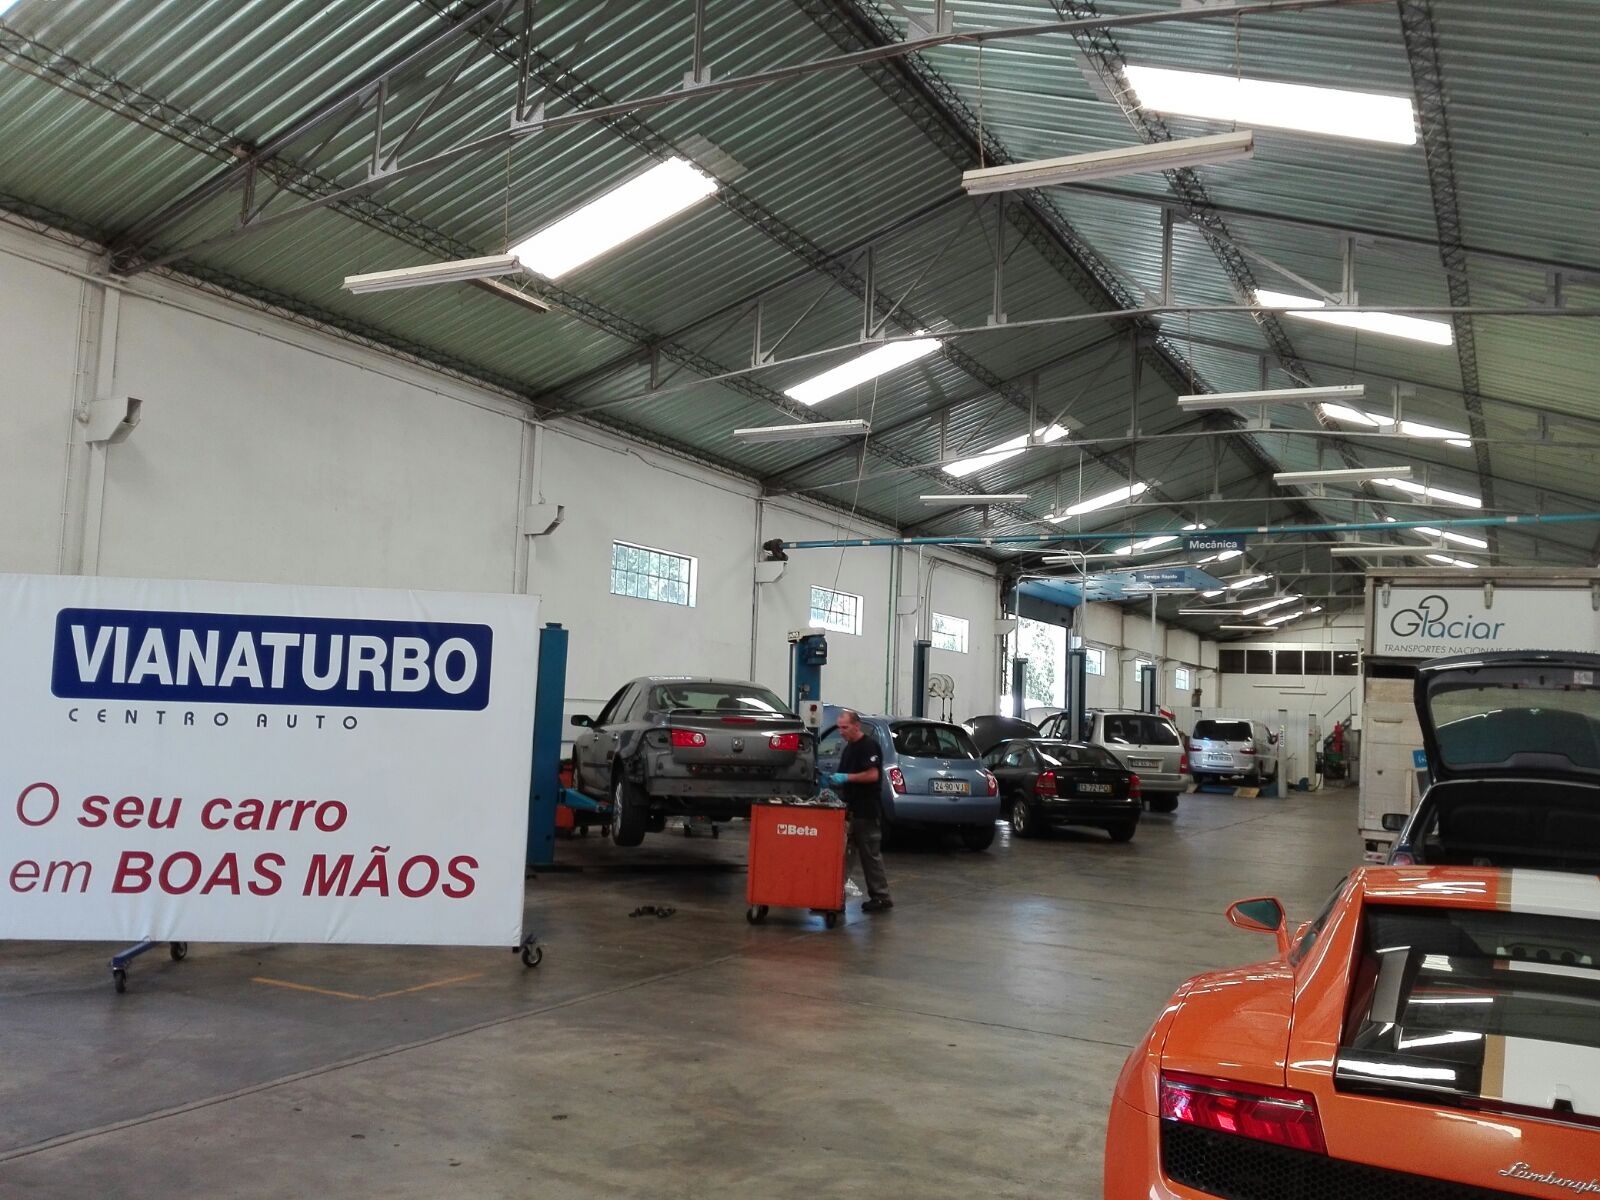 Images Vianaturbo-Darcar Automóveis Lda